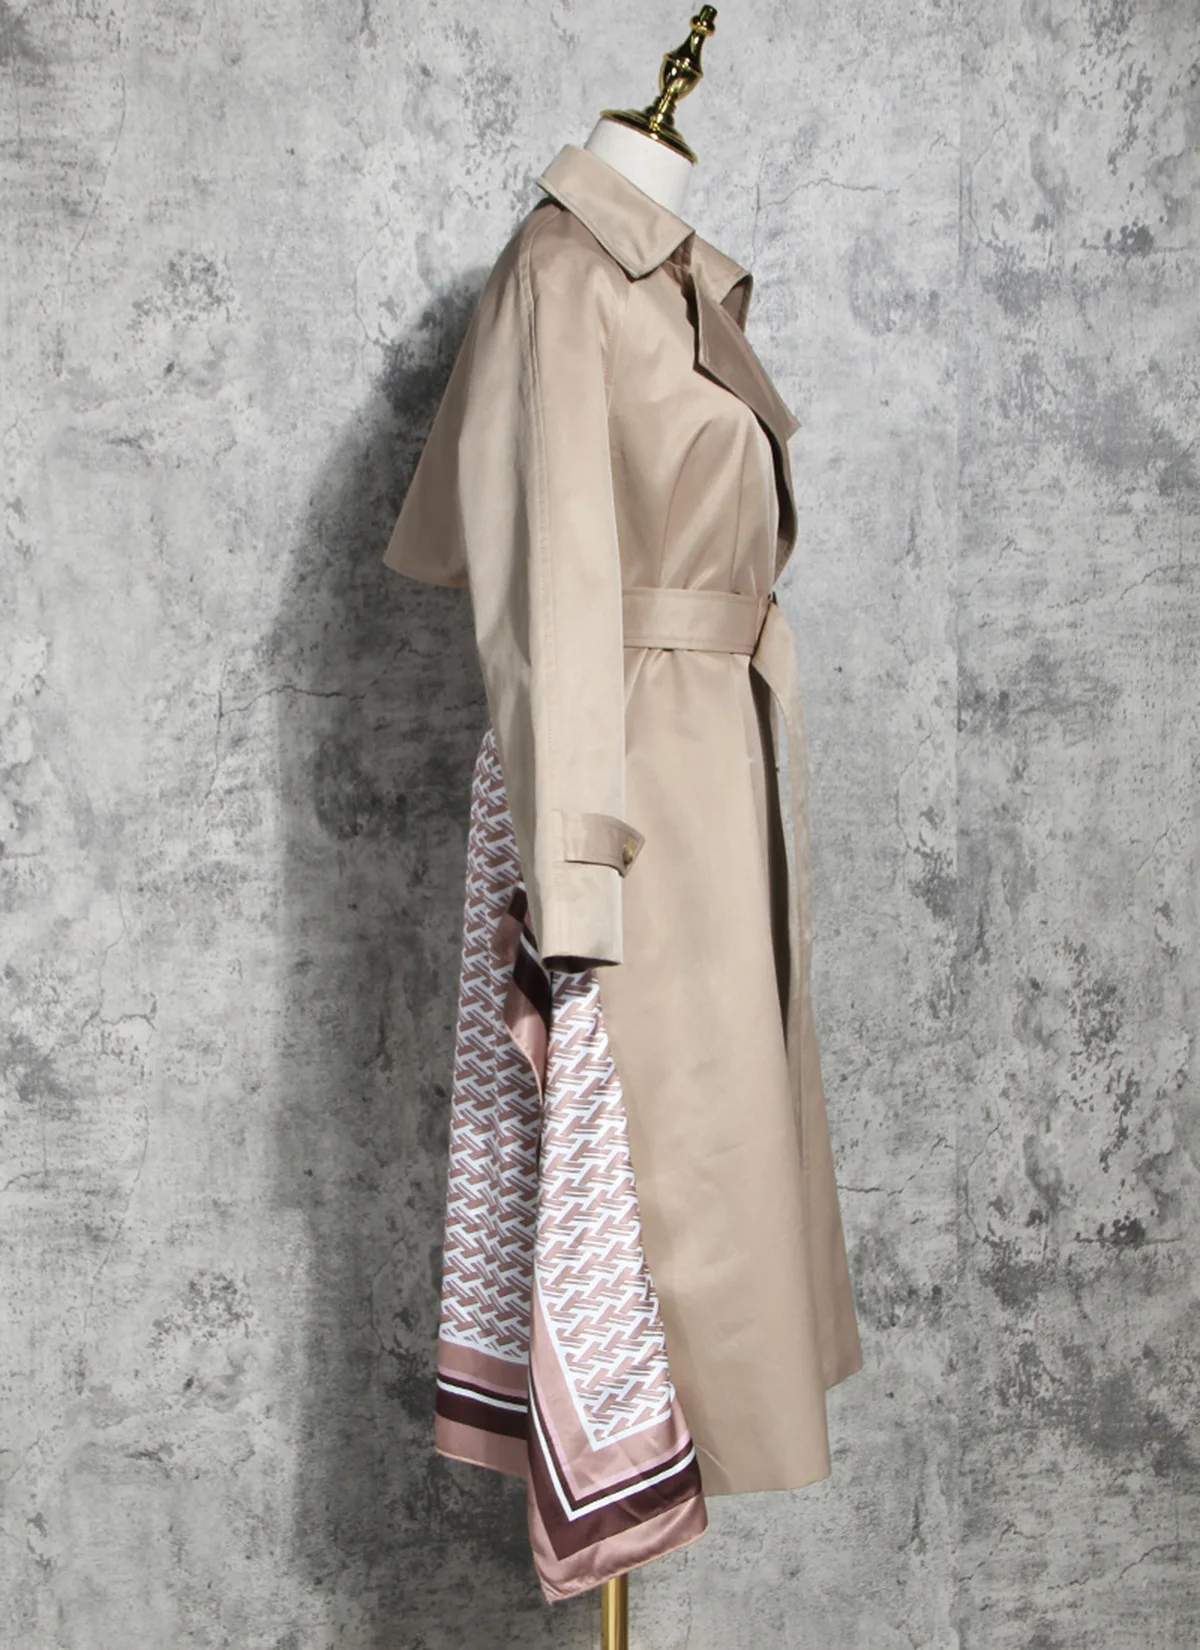 OMIKRON зима Тренч с капюшоном пальто корейского размера плюс хаки длинное пальто Женский Тренч пальто осенняя одежда для женщин